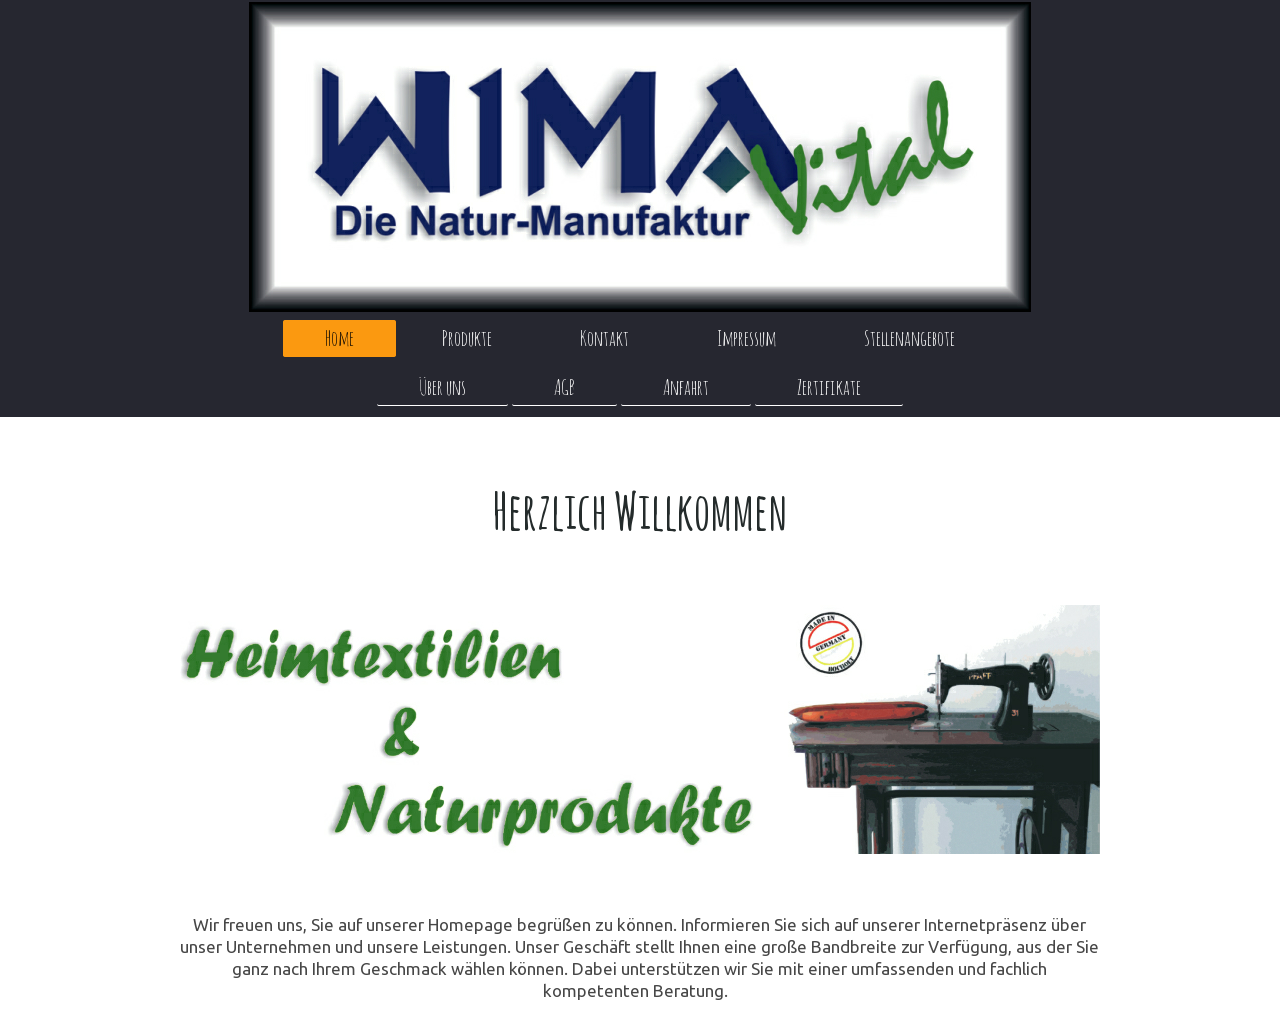 Bild Website wimavital.de in 1280x1024